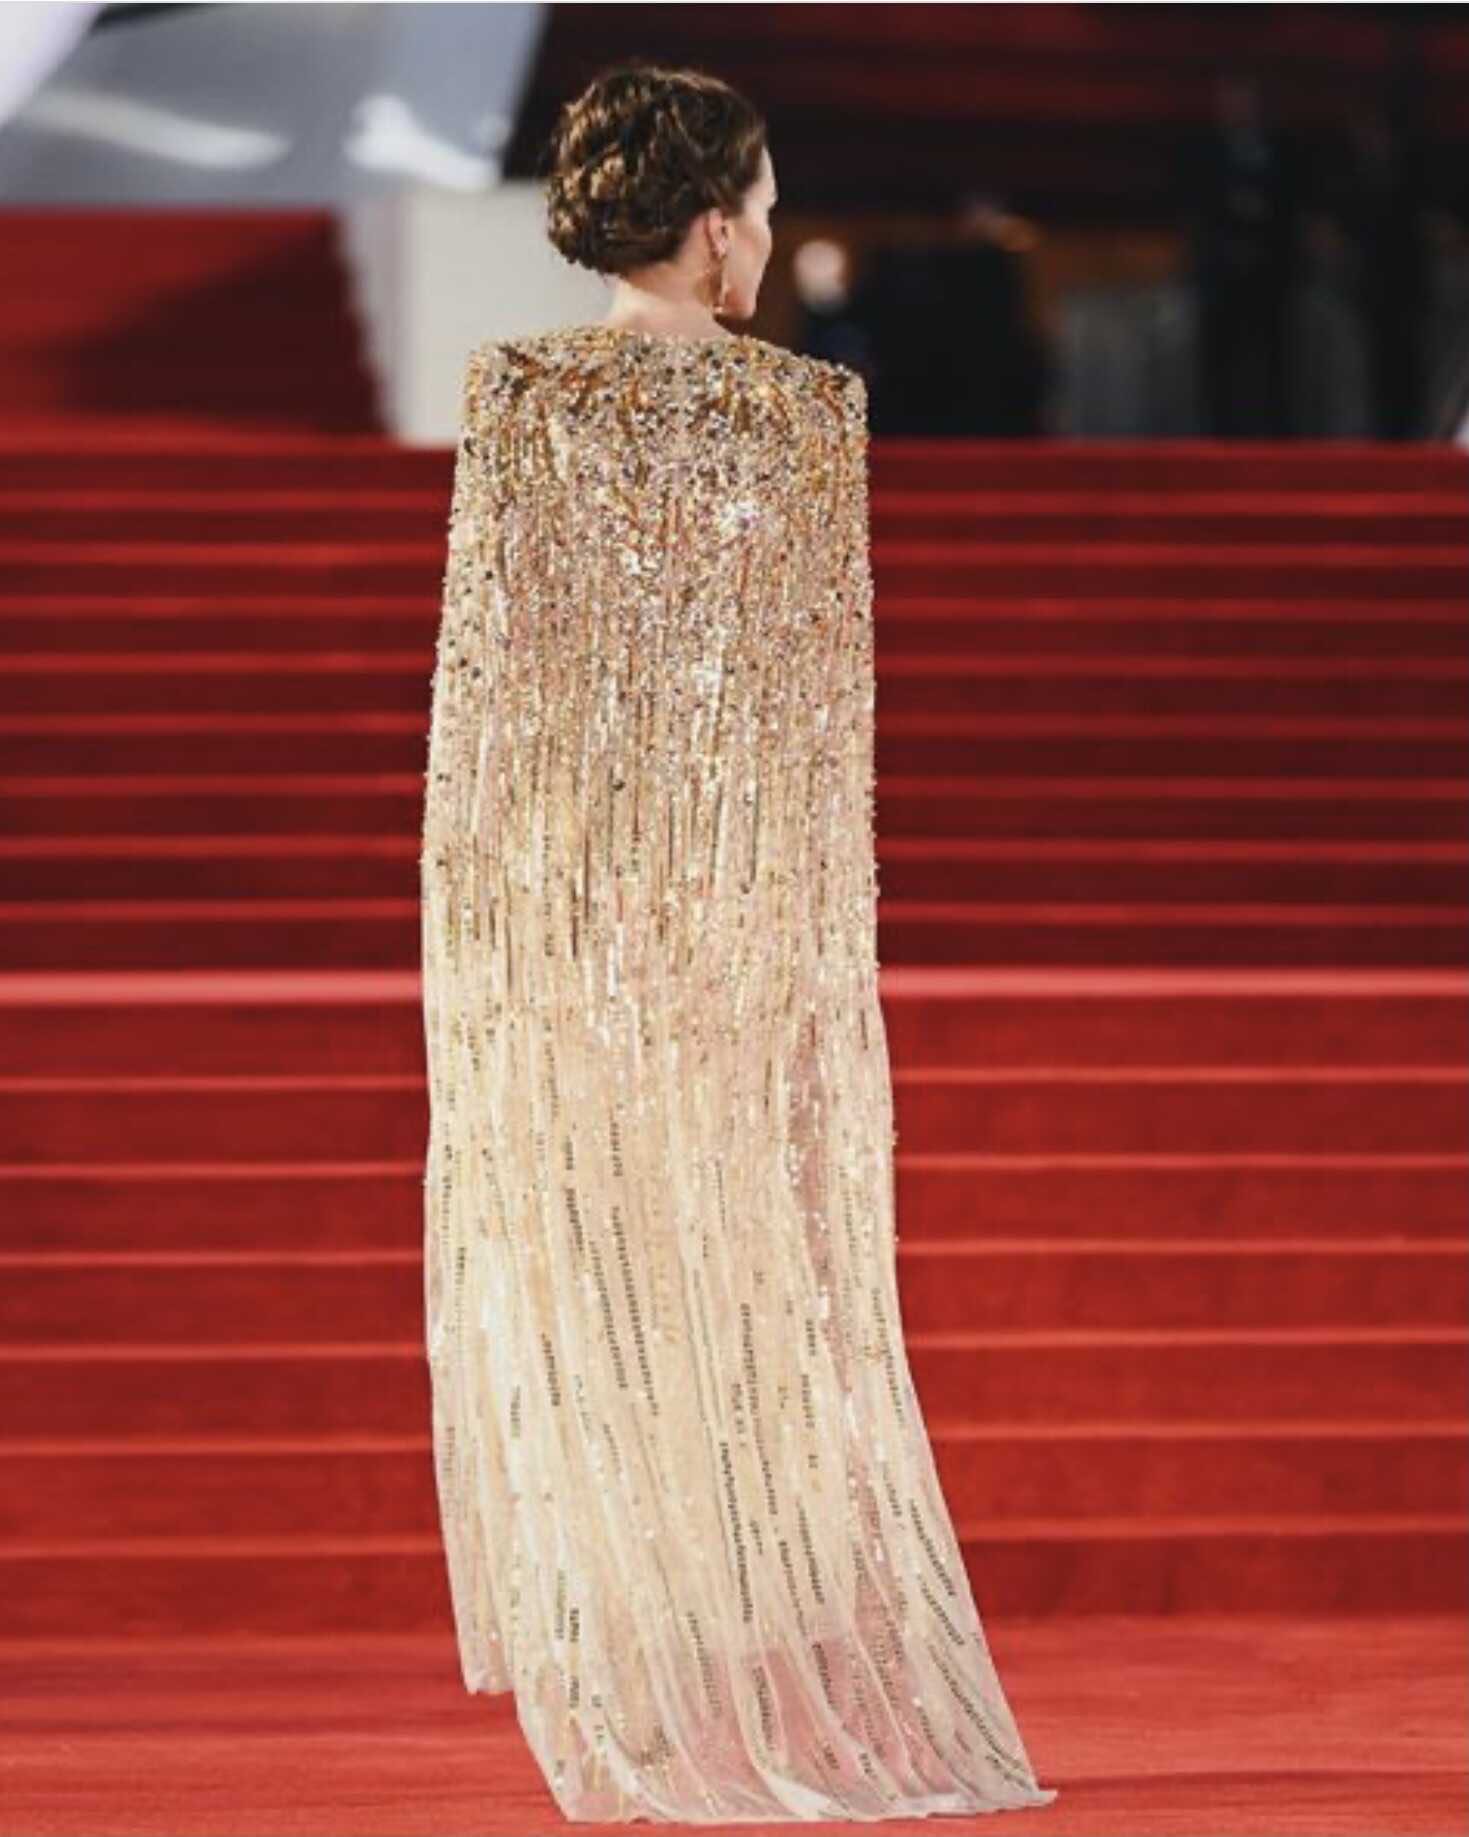 Кейт Миддлтон покорила публику, появившись на кинопремьере в роскошном золотом платье